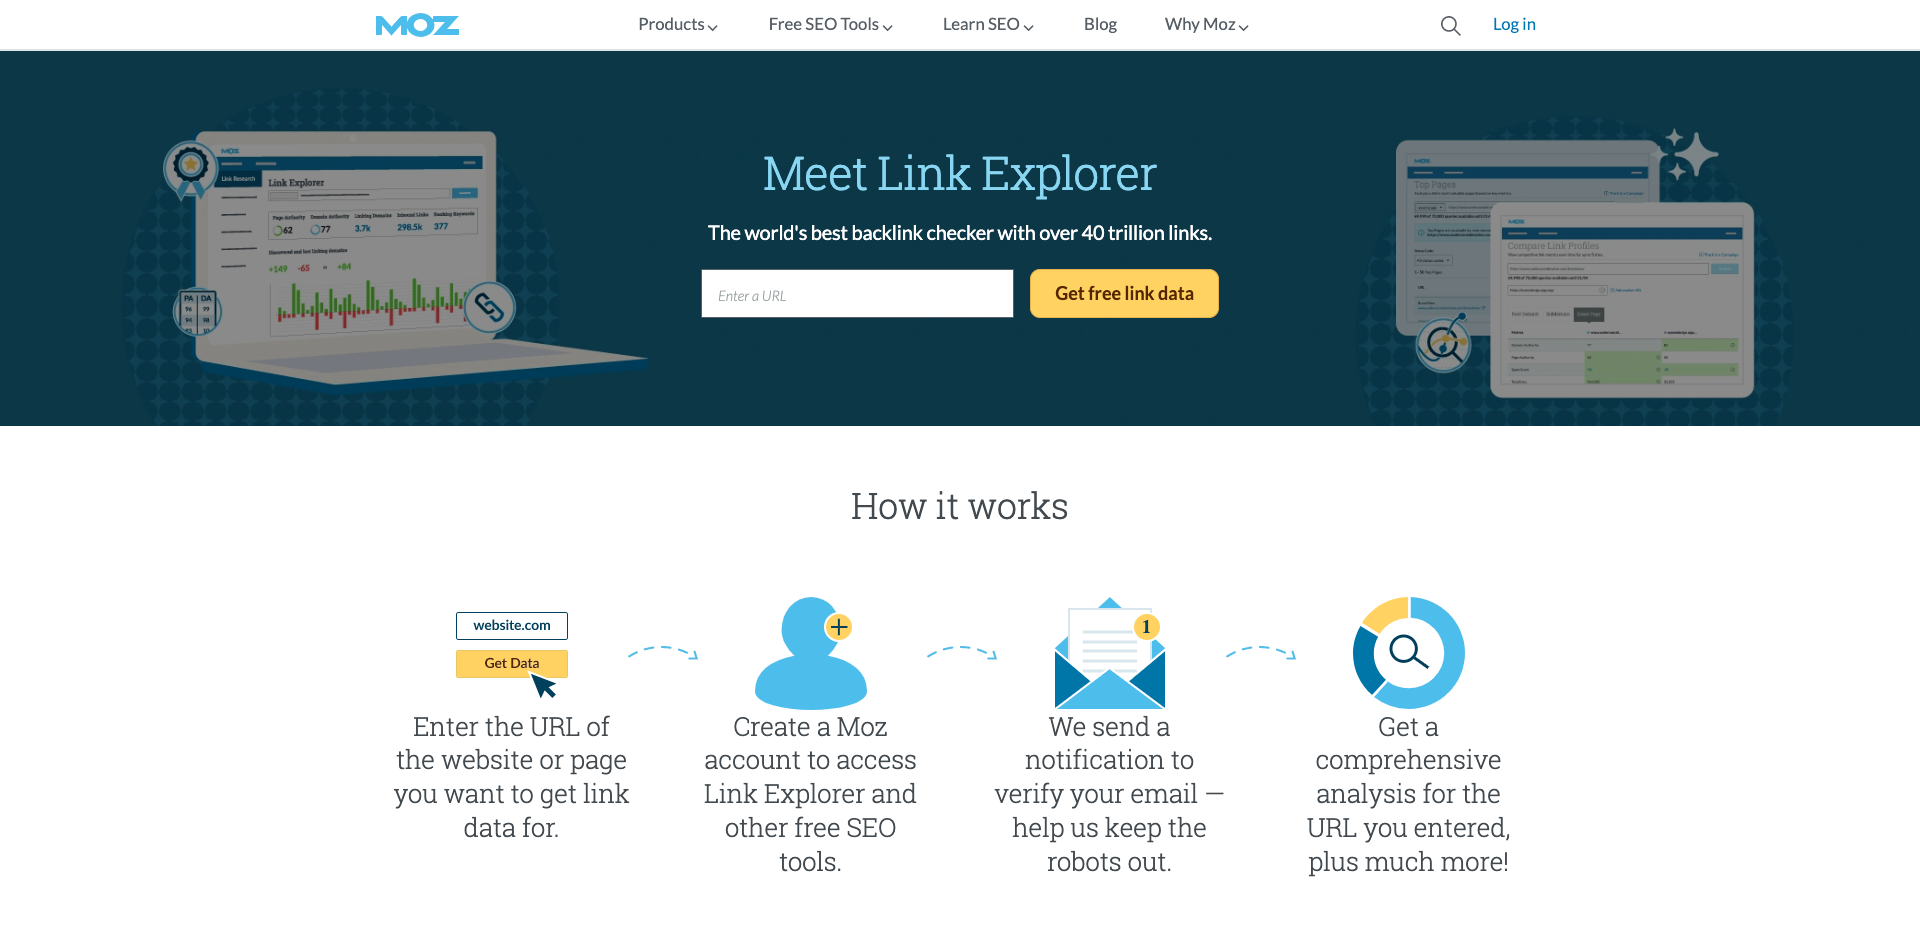 Link Explorer - Backlink Checker with 40T Links! - Moz